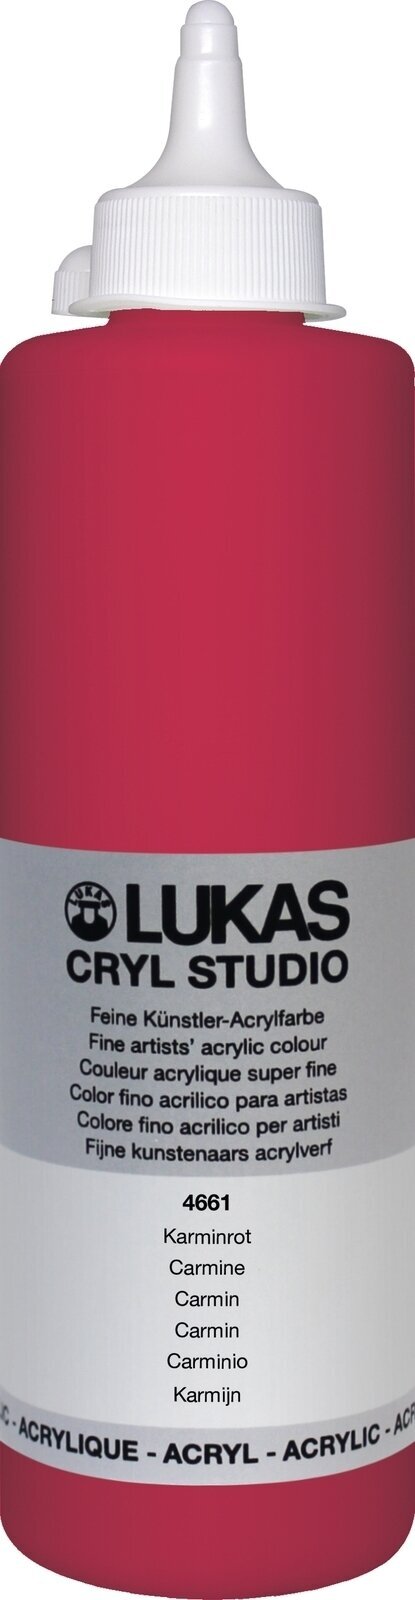 Acrylfarbe Lukas Cryl Studio Acrylfarbe 500 ml Carmine